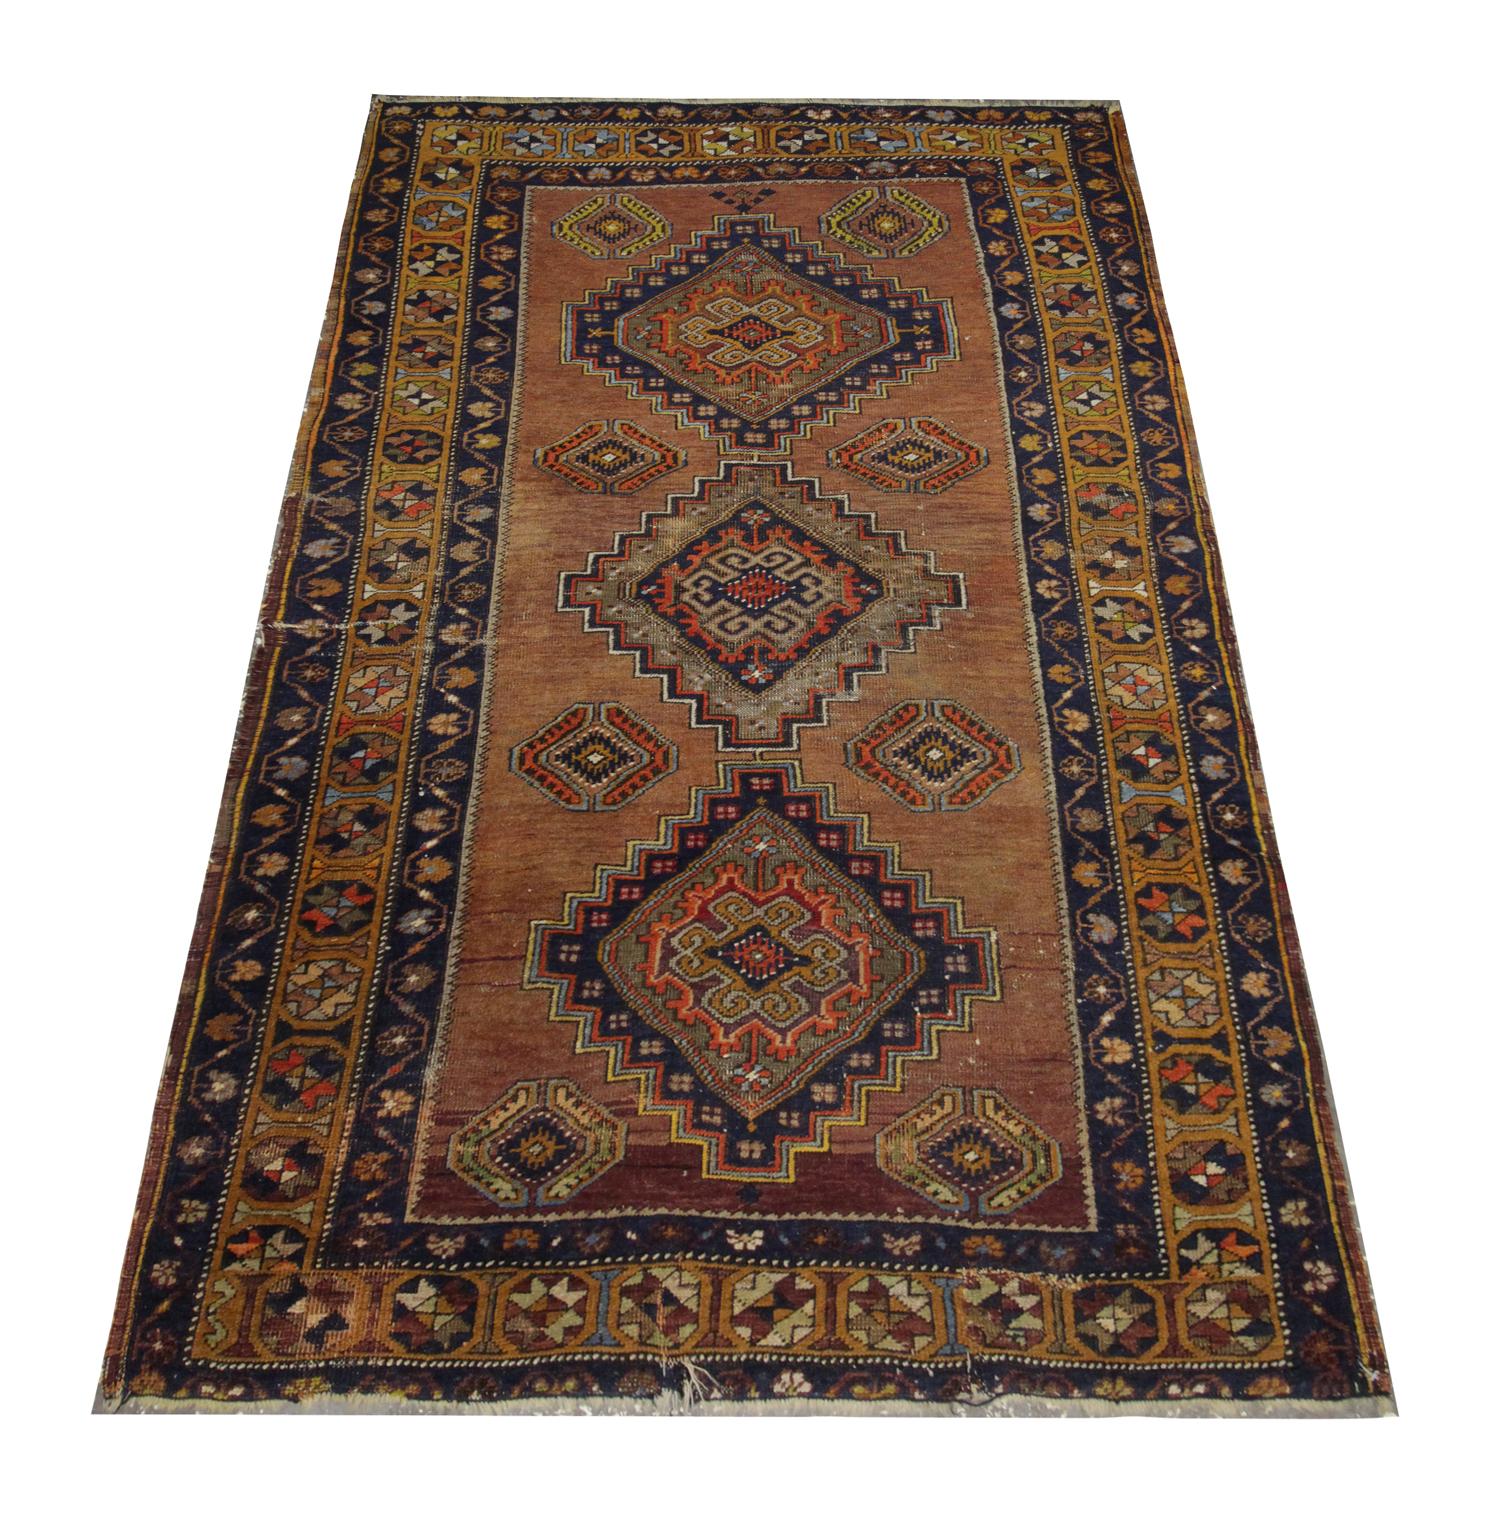 Ce tapis en laine fine est un excellent exemple de tapis d'Orient tissé au début du 20e siècle. Le motif central présente un médaillon audacieux tissé en bleu profond, orange et beige sur un fond brun/beige. Une bordure à motifs répétitifs a ensuite